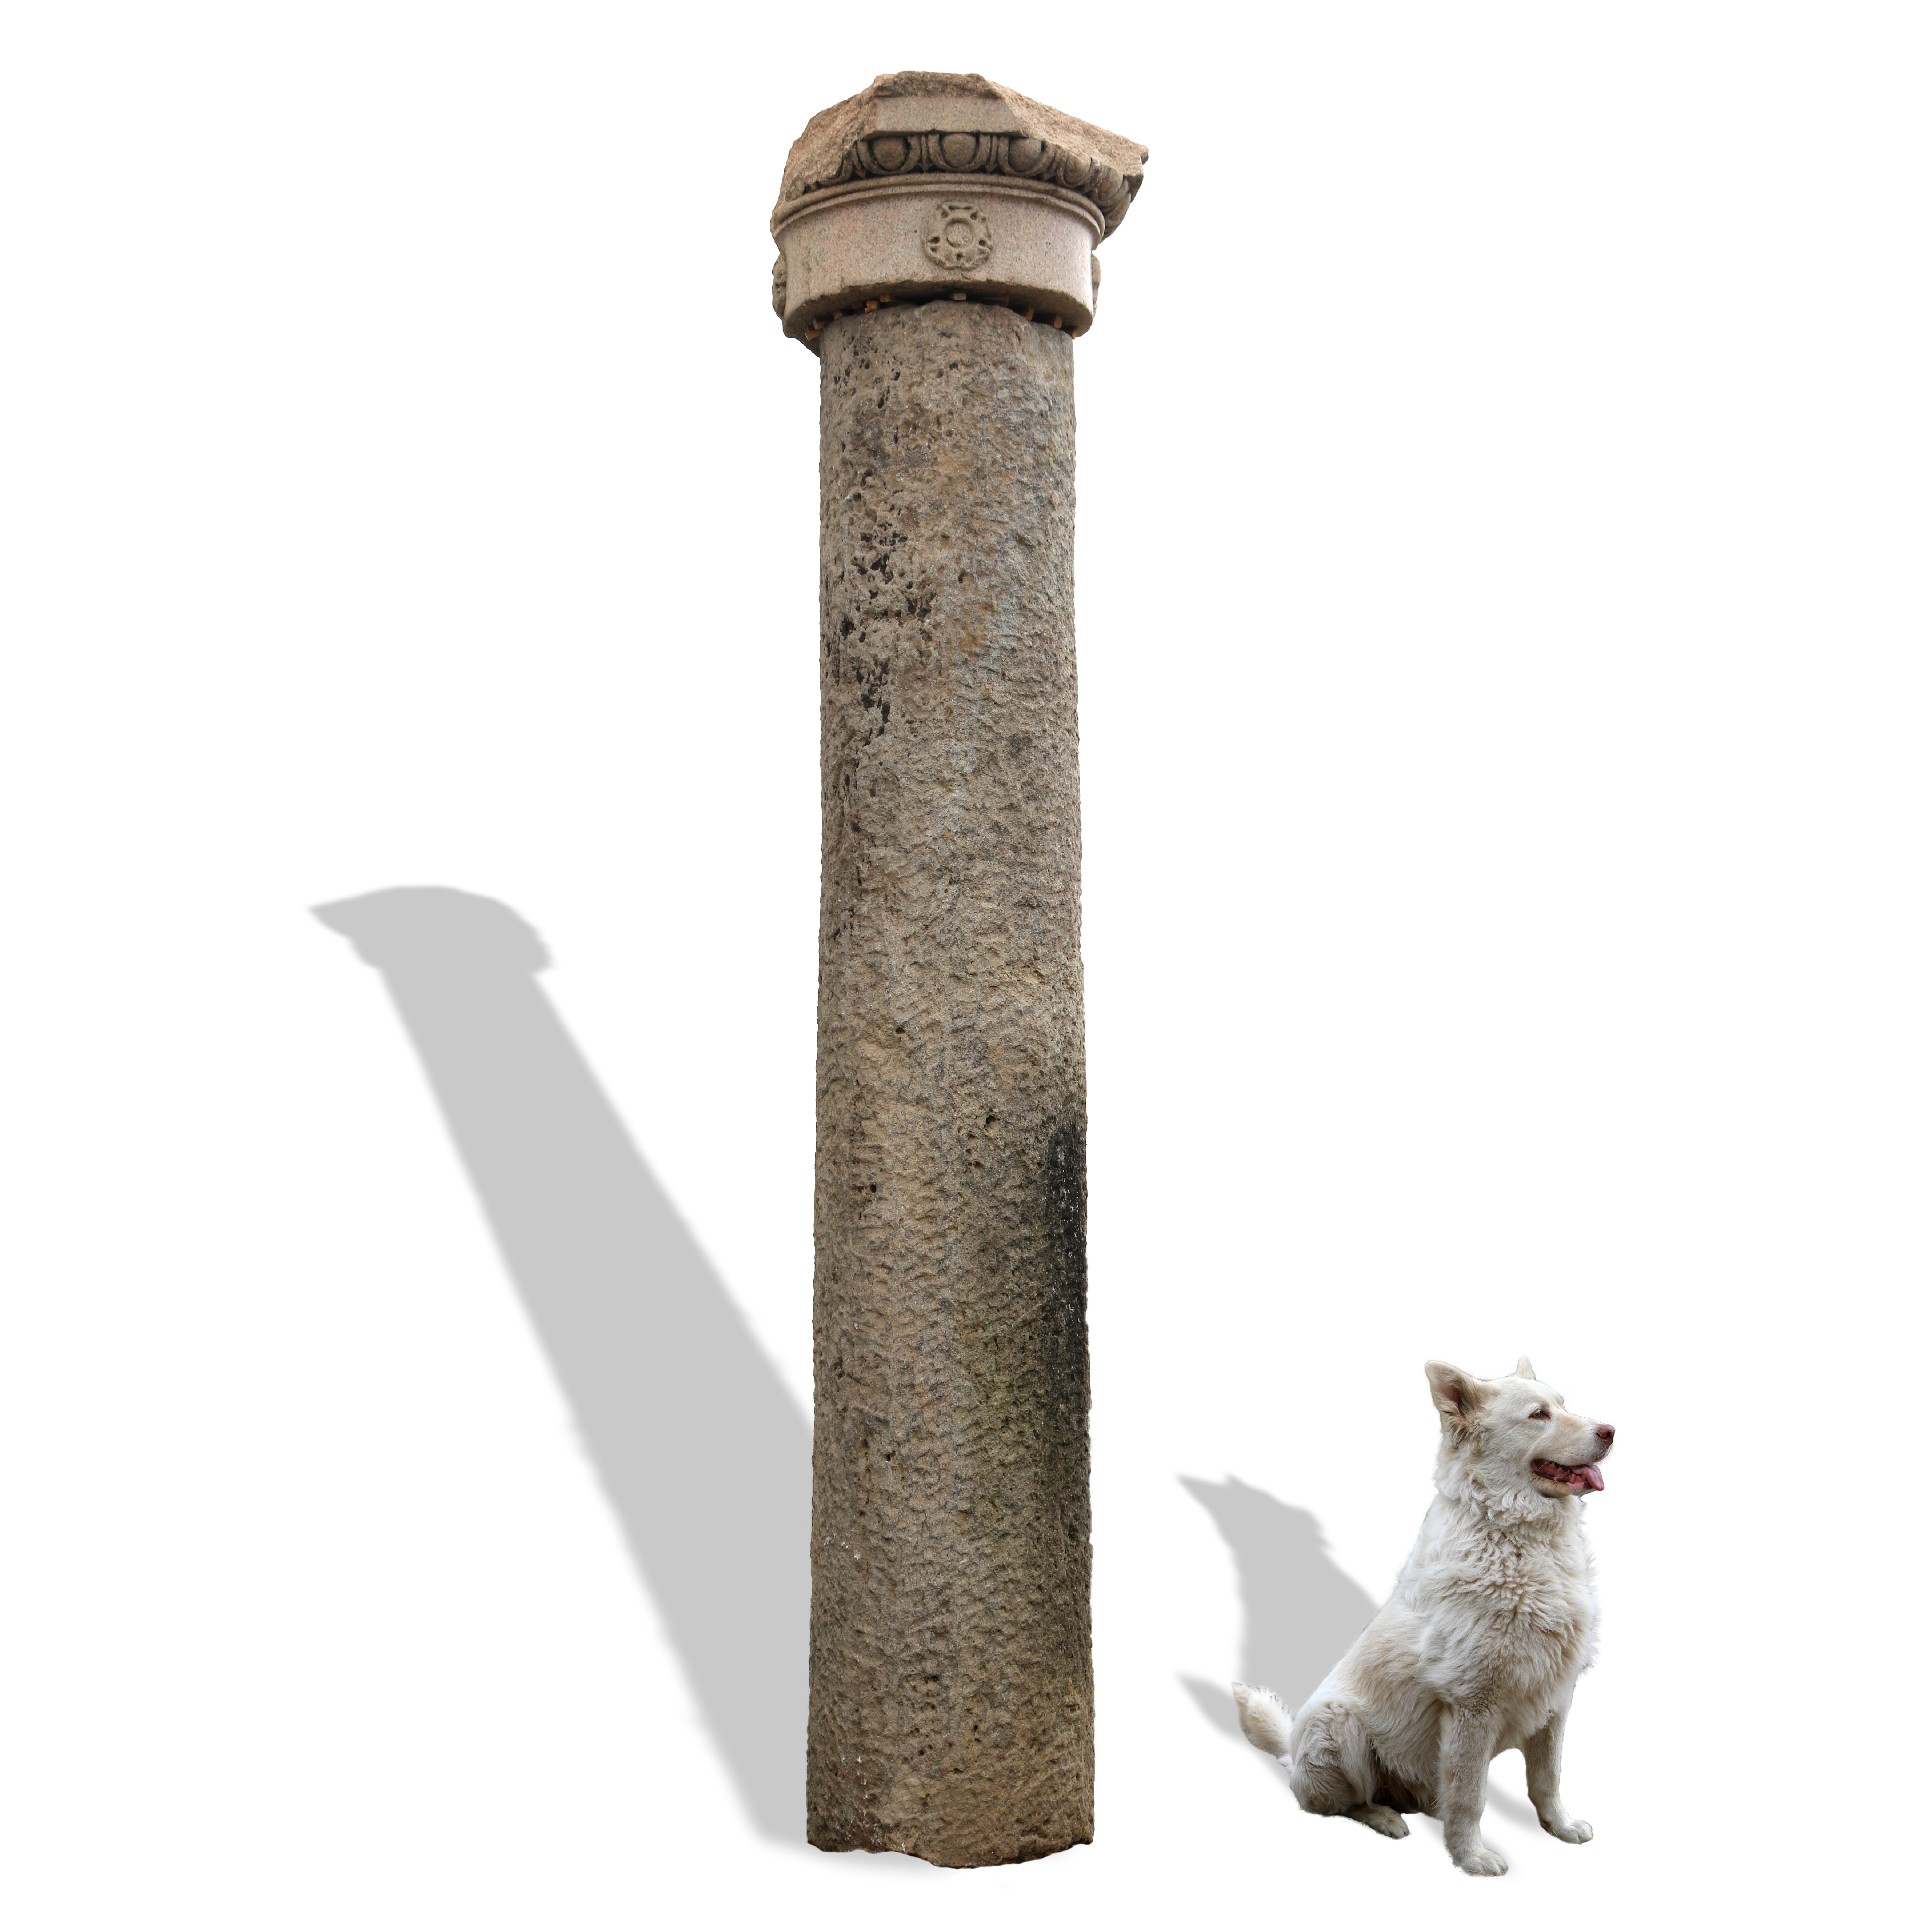 Antica colonna in pietra monumentale. - Colonne antiche - Architettura - Prodotti - Antichità Fiorillo